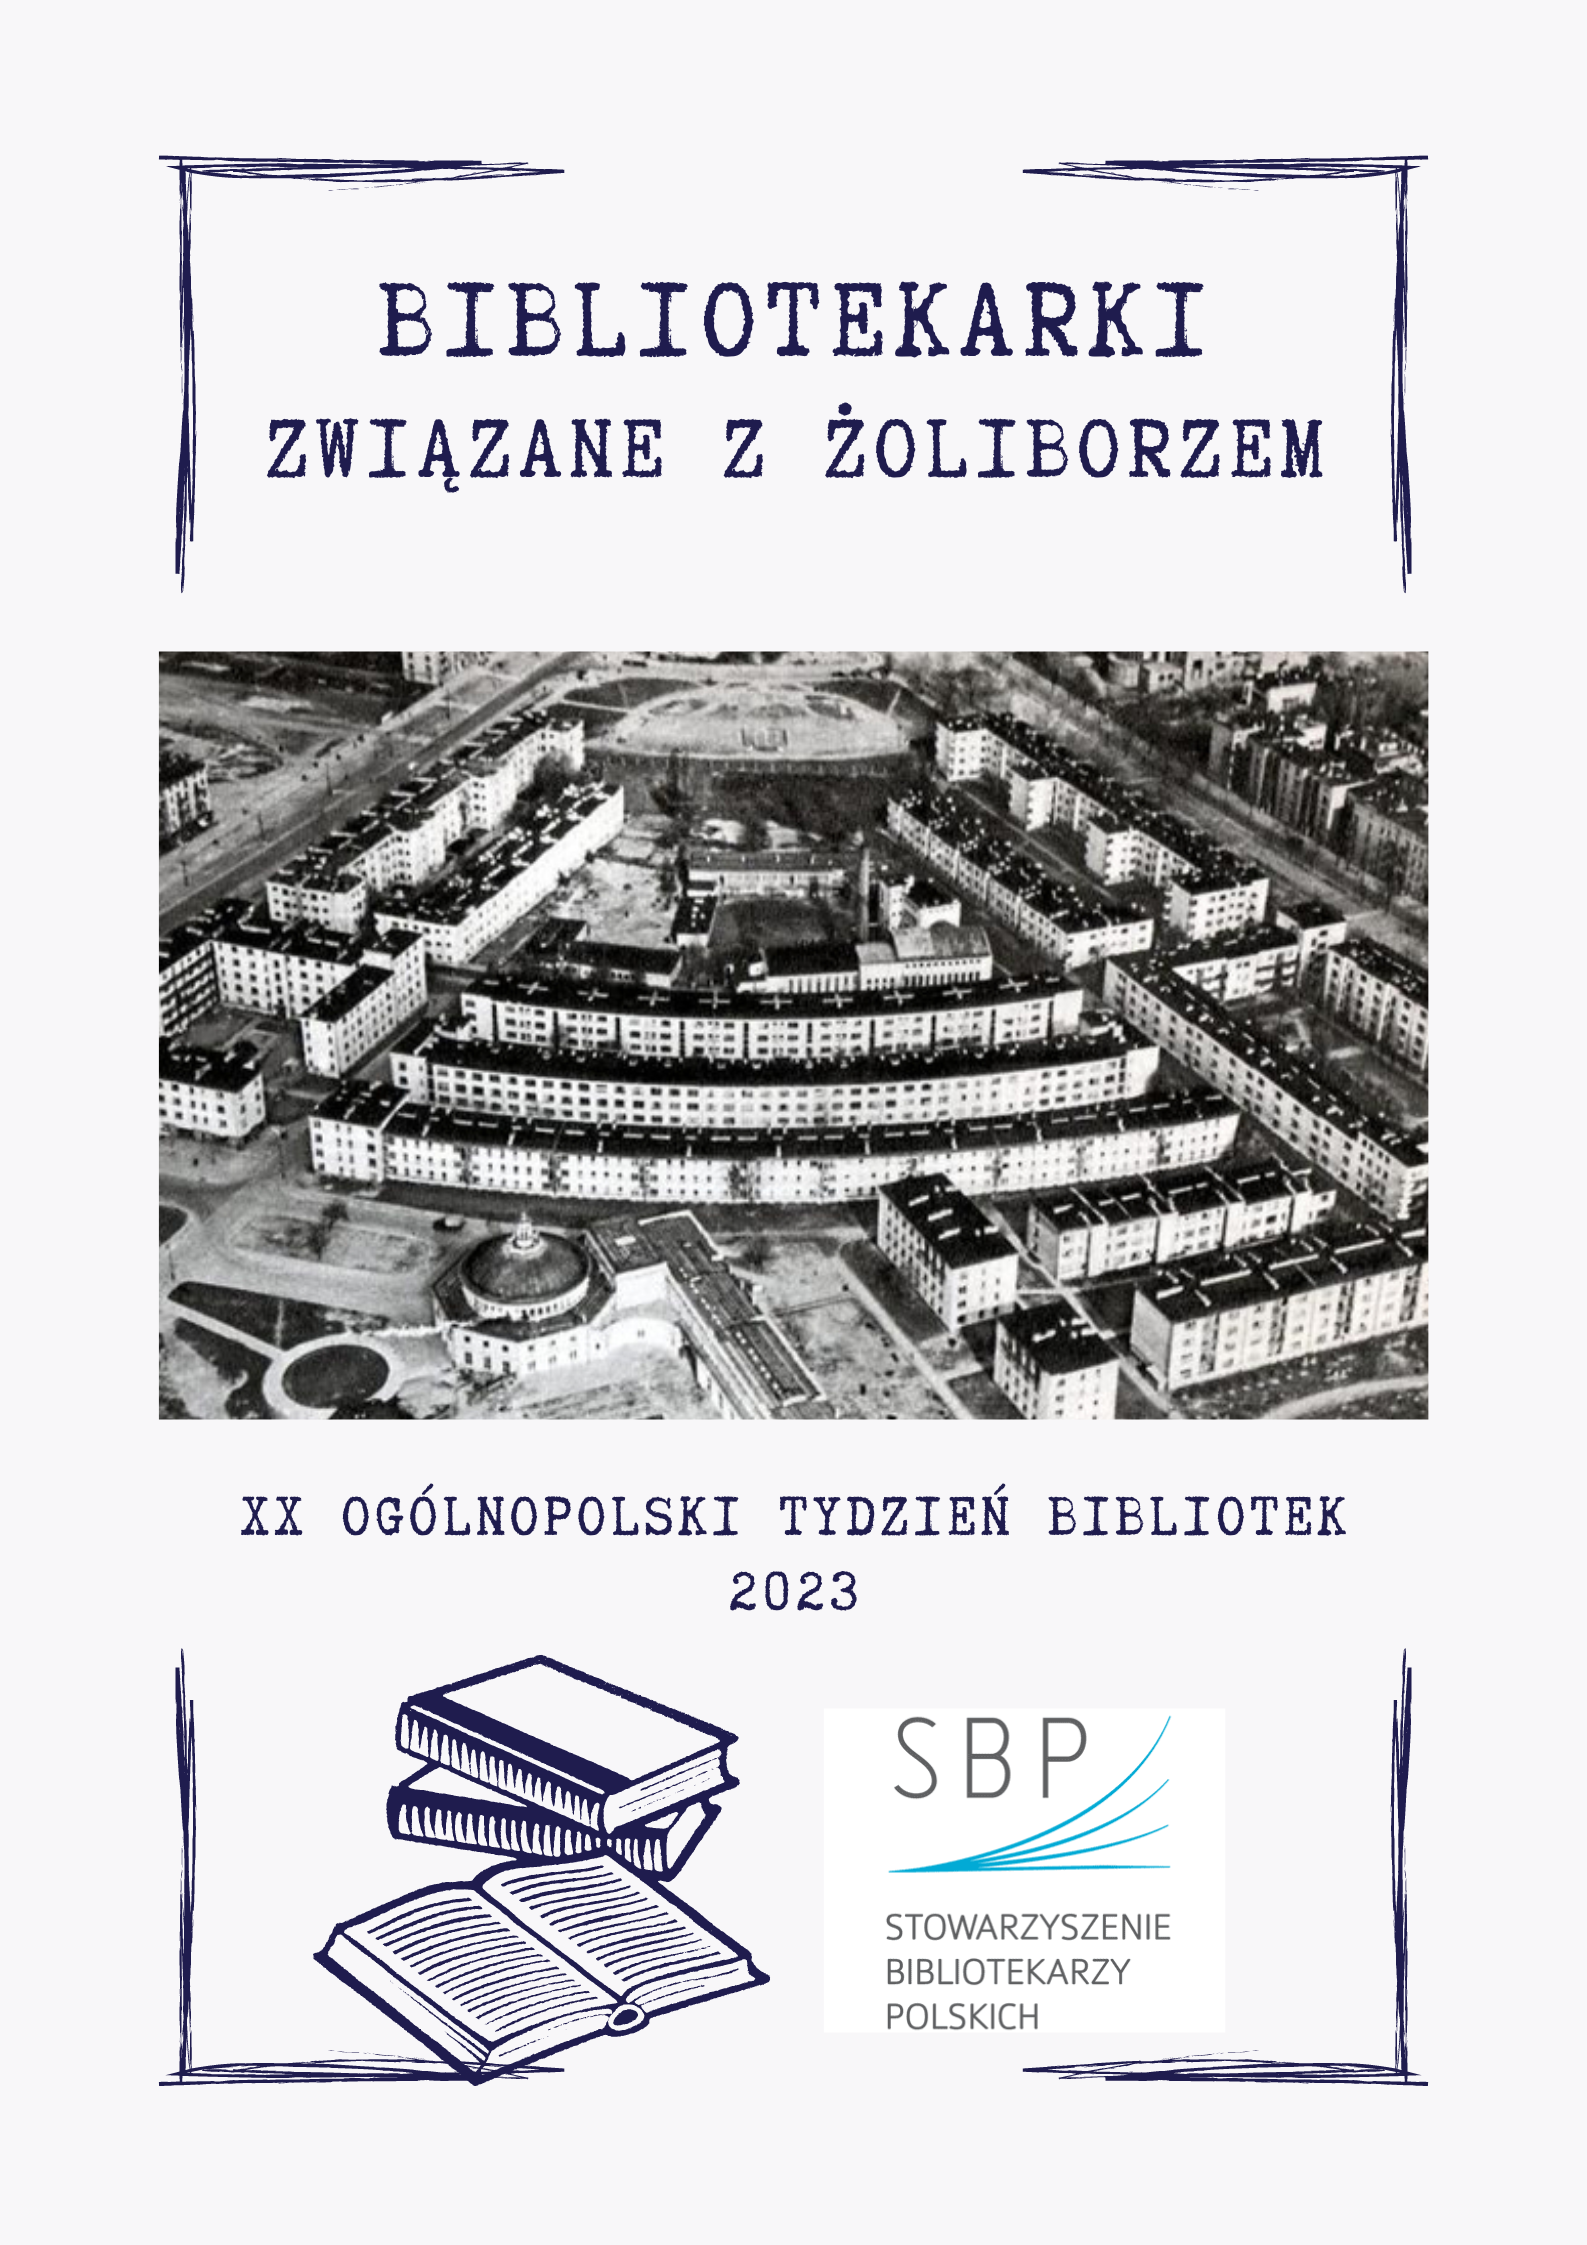 Plakat towarzyszący wydarzeniu "Bibliotekarki związane z Żoliborzem" utrzymany w kolorach szarości i granatu.